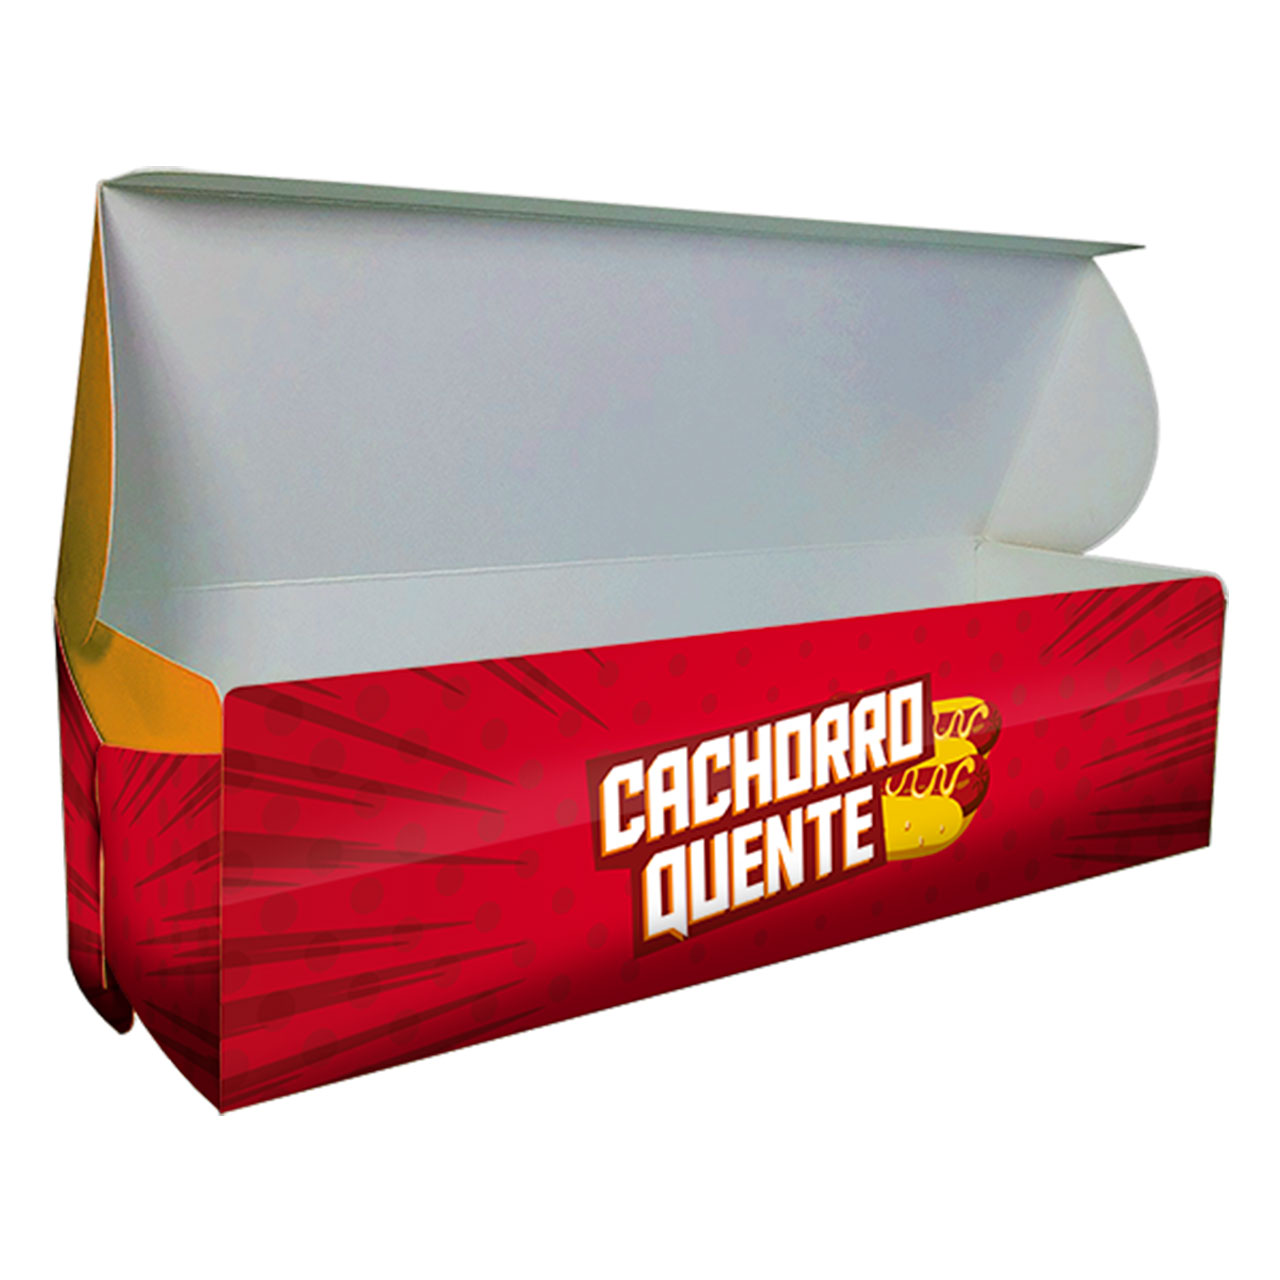 Embalagem para Hot Dog Balcão – 20,5 x 7 x 4,5 cm – 100 Unidades